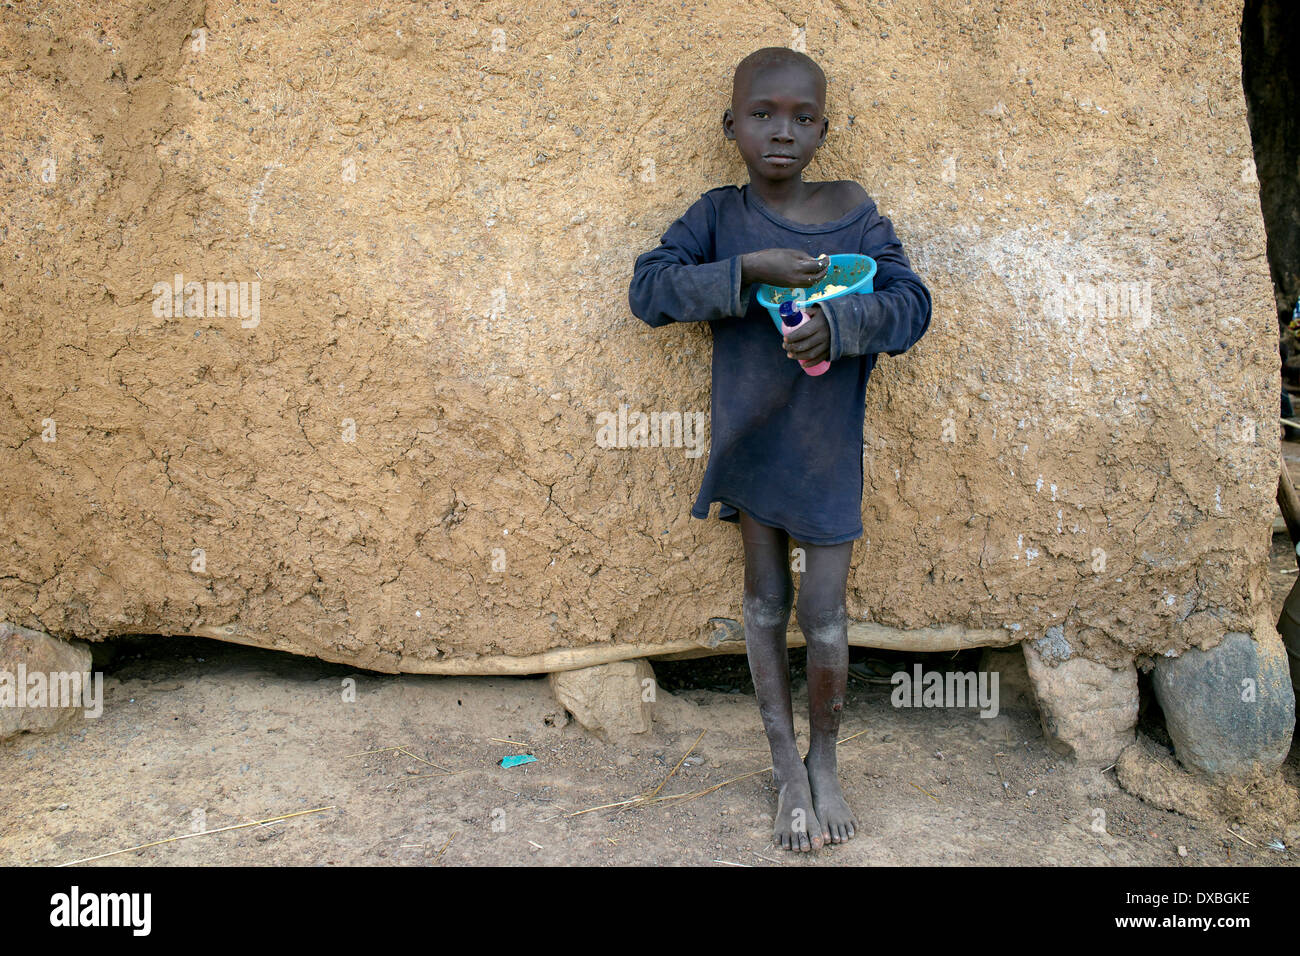 Jeune garçon africain de manger un bol de plastique Banque D'Images